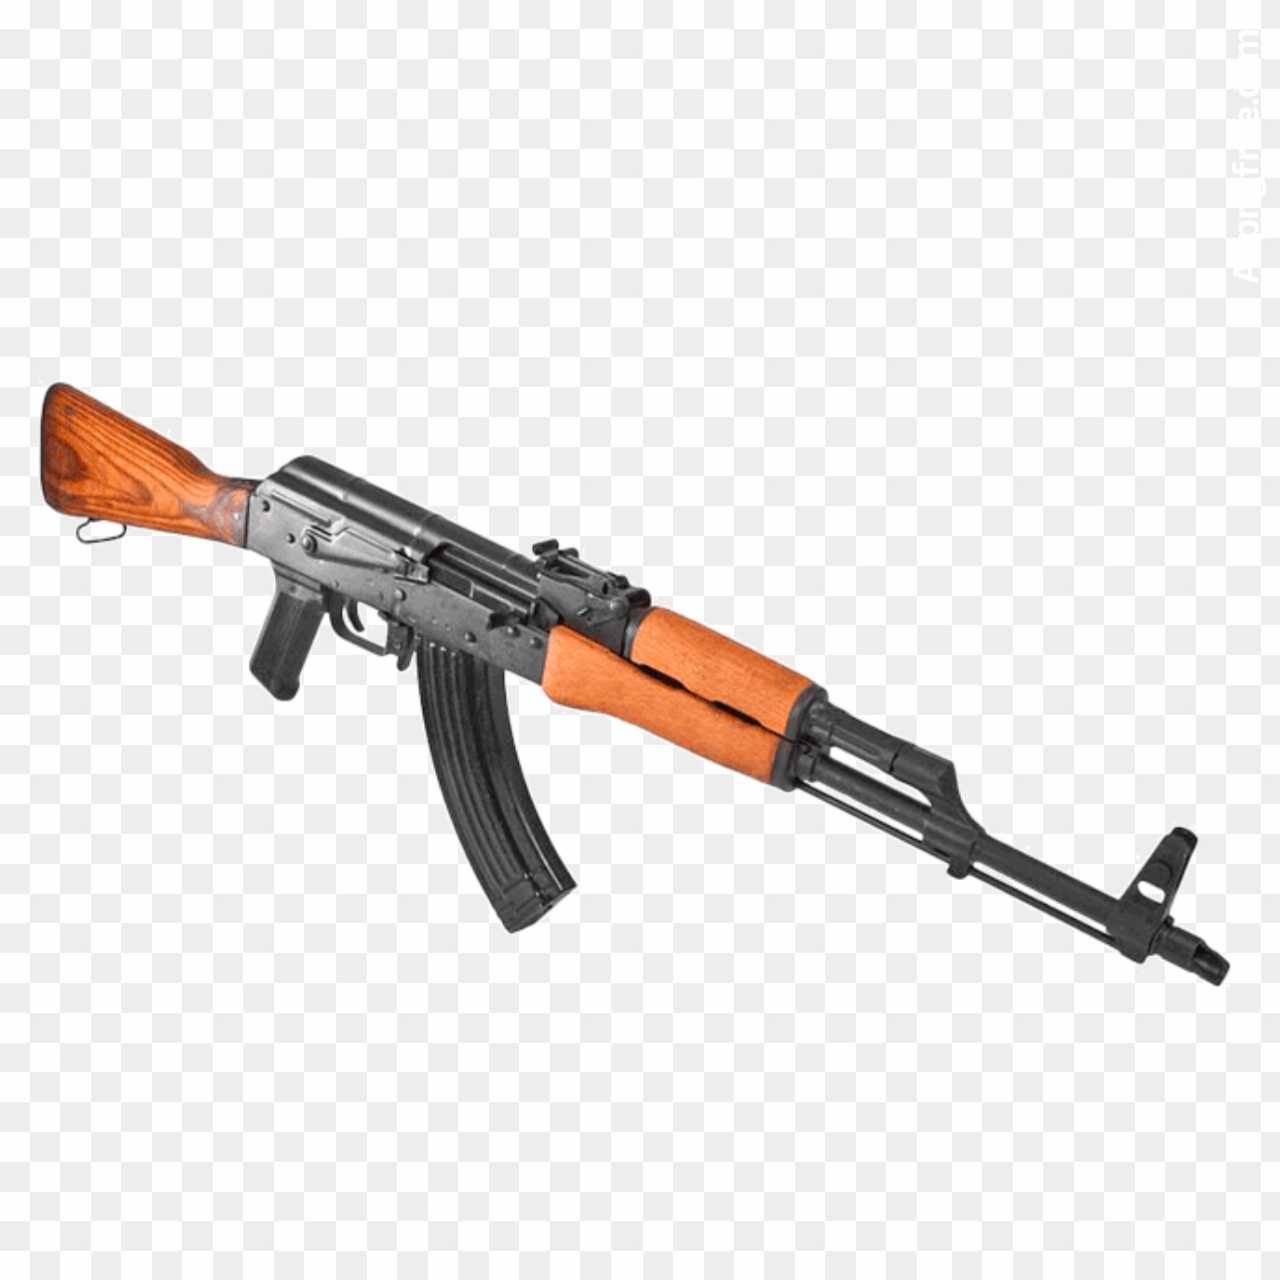 Clipart - AK 47 Rifle silhouette